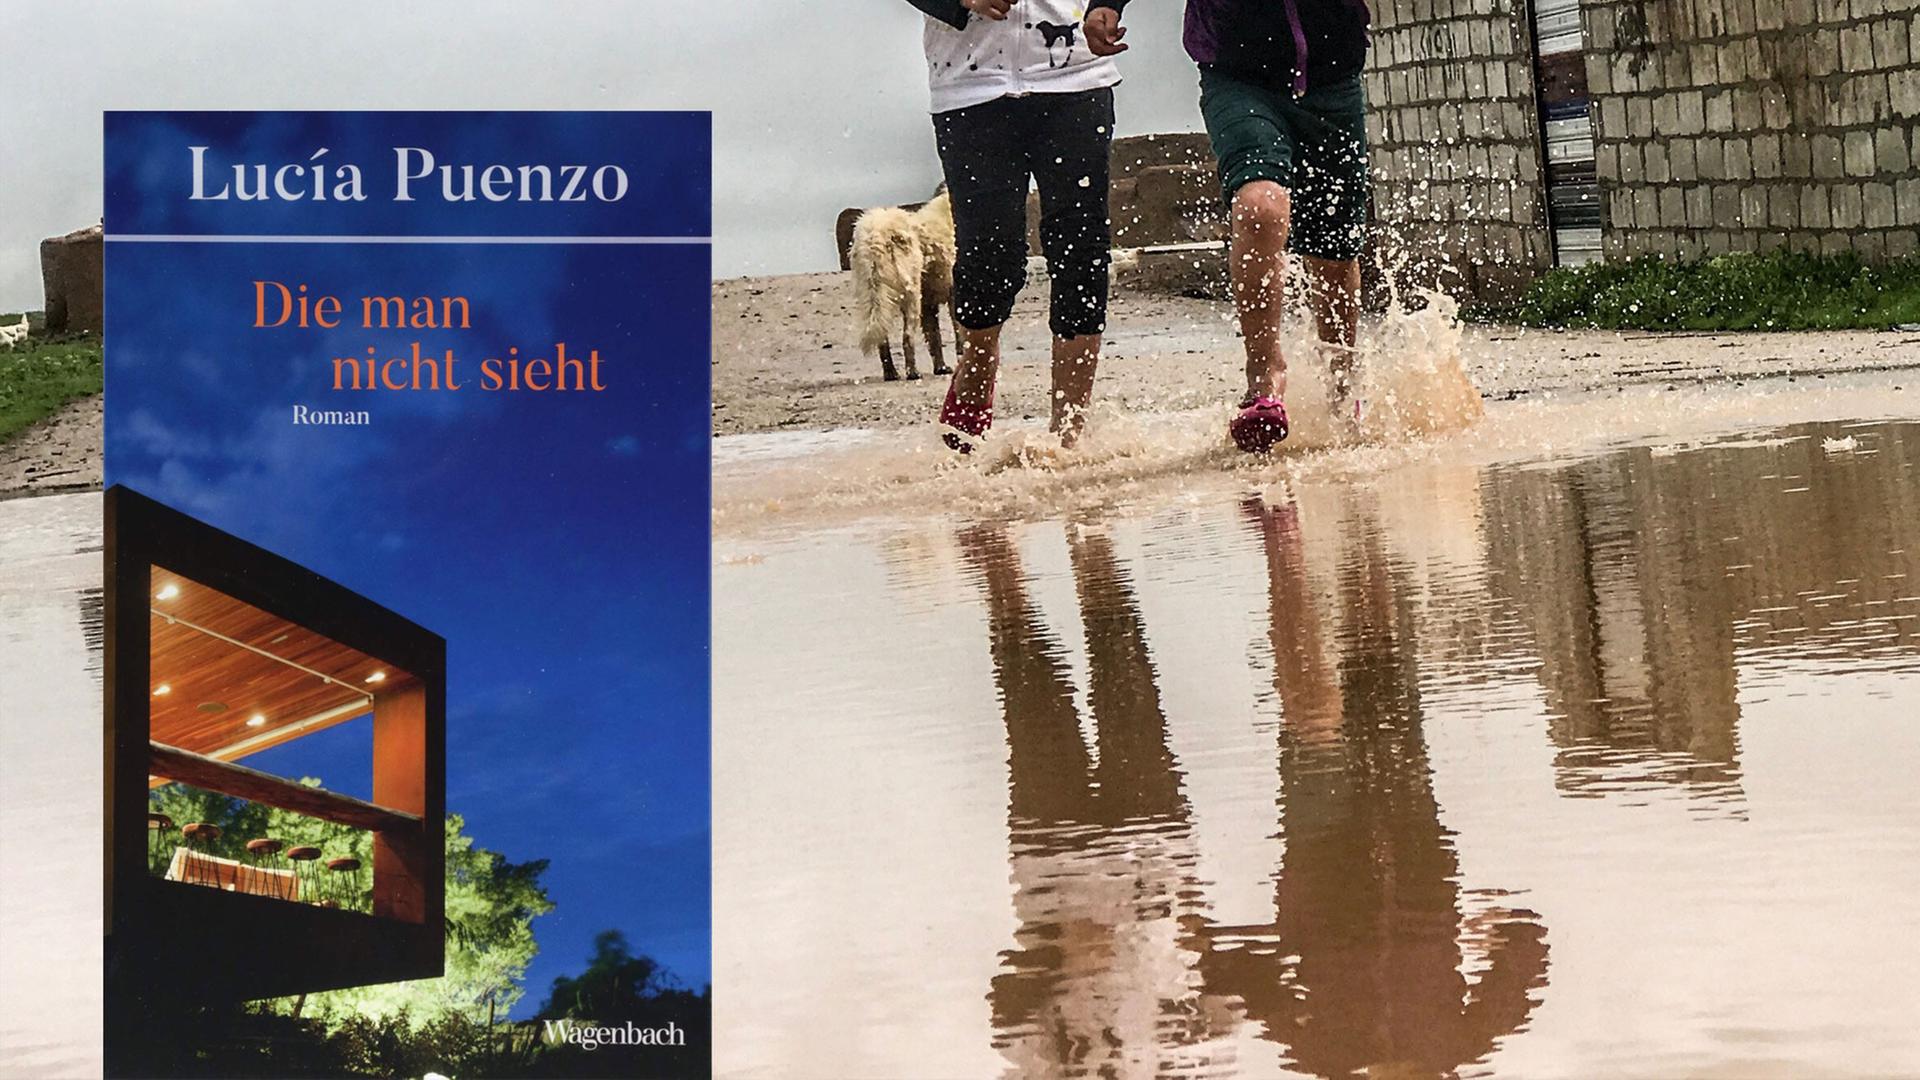 Cover von Lucía Puenzos Krimi "Die man nicht sieht". Im Hintergrund sind Kinder zu sehen, die durch eine schlammige Pfütze laufen.